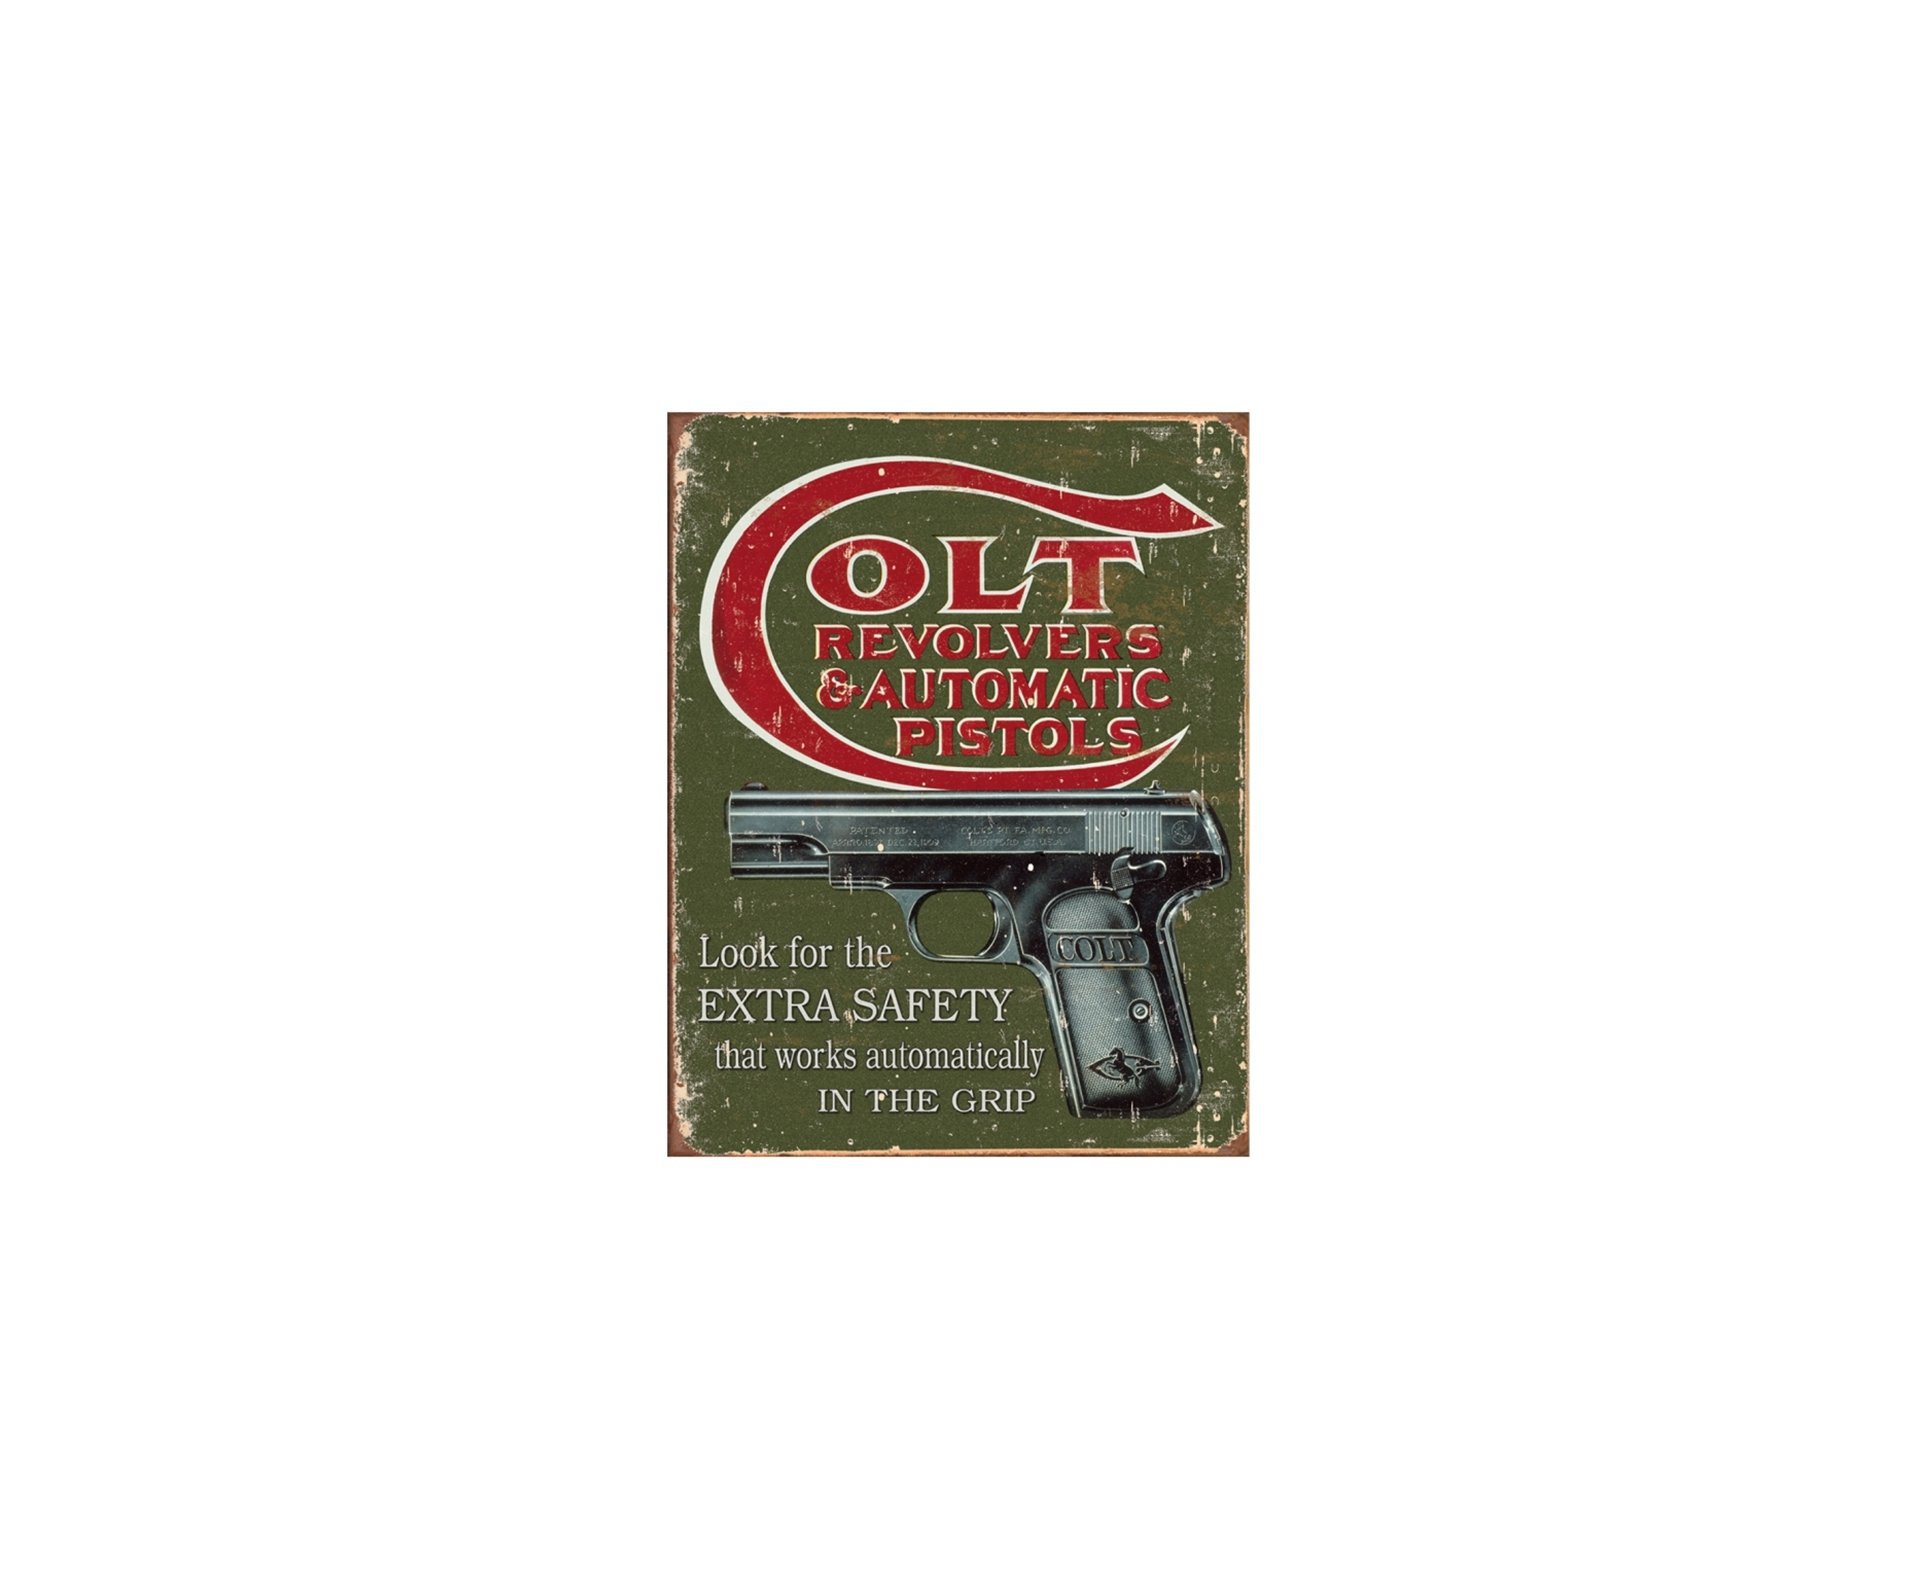 Placa Metálica Decorativa Colt Pistols - Rossi